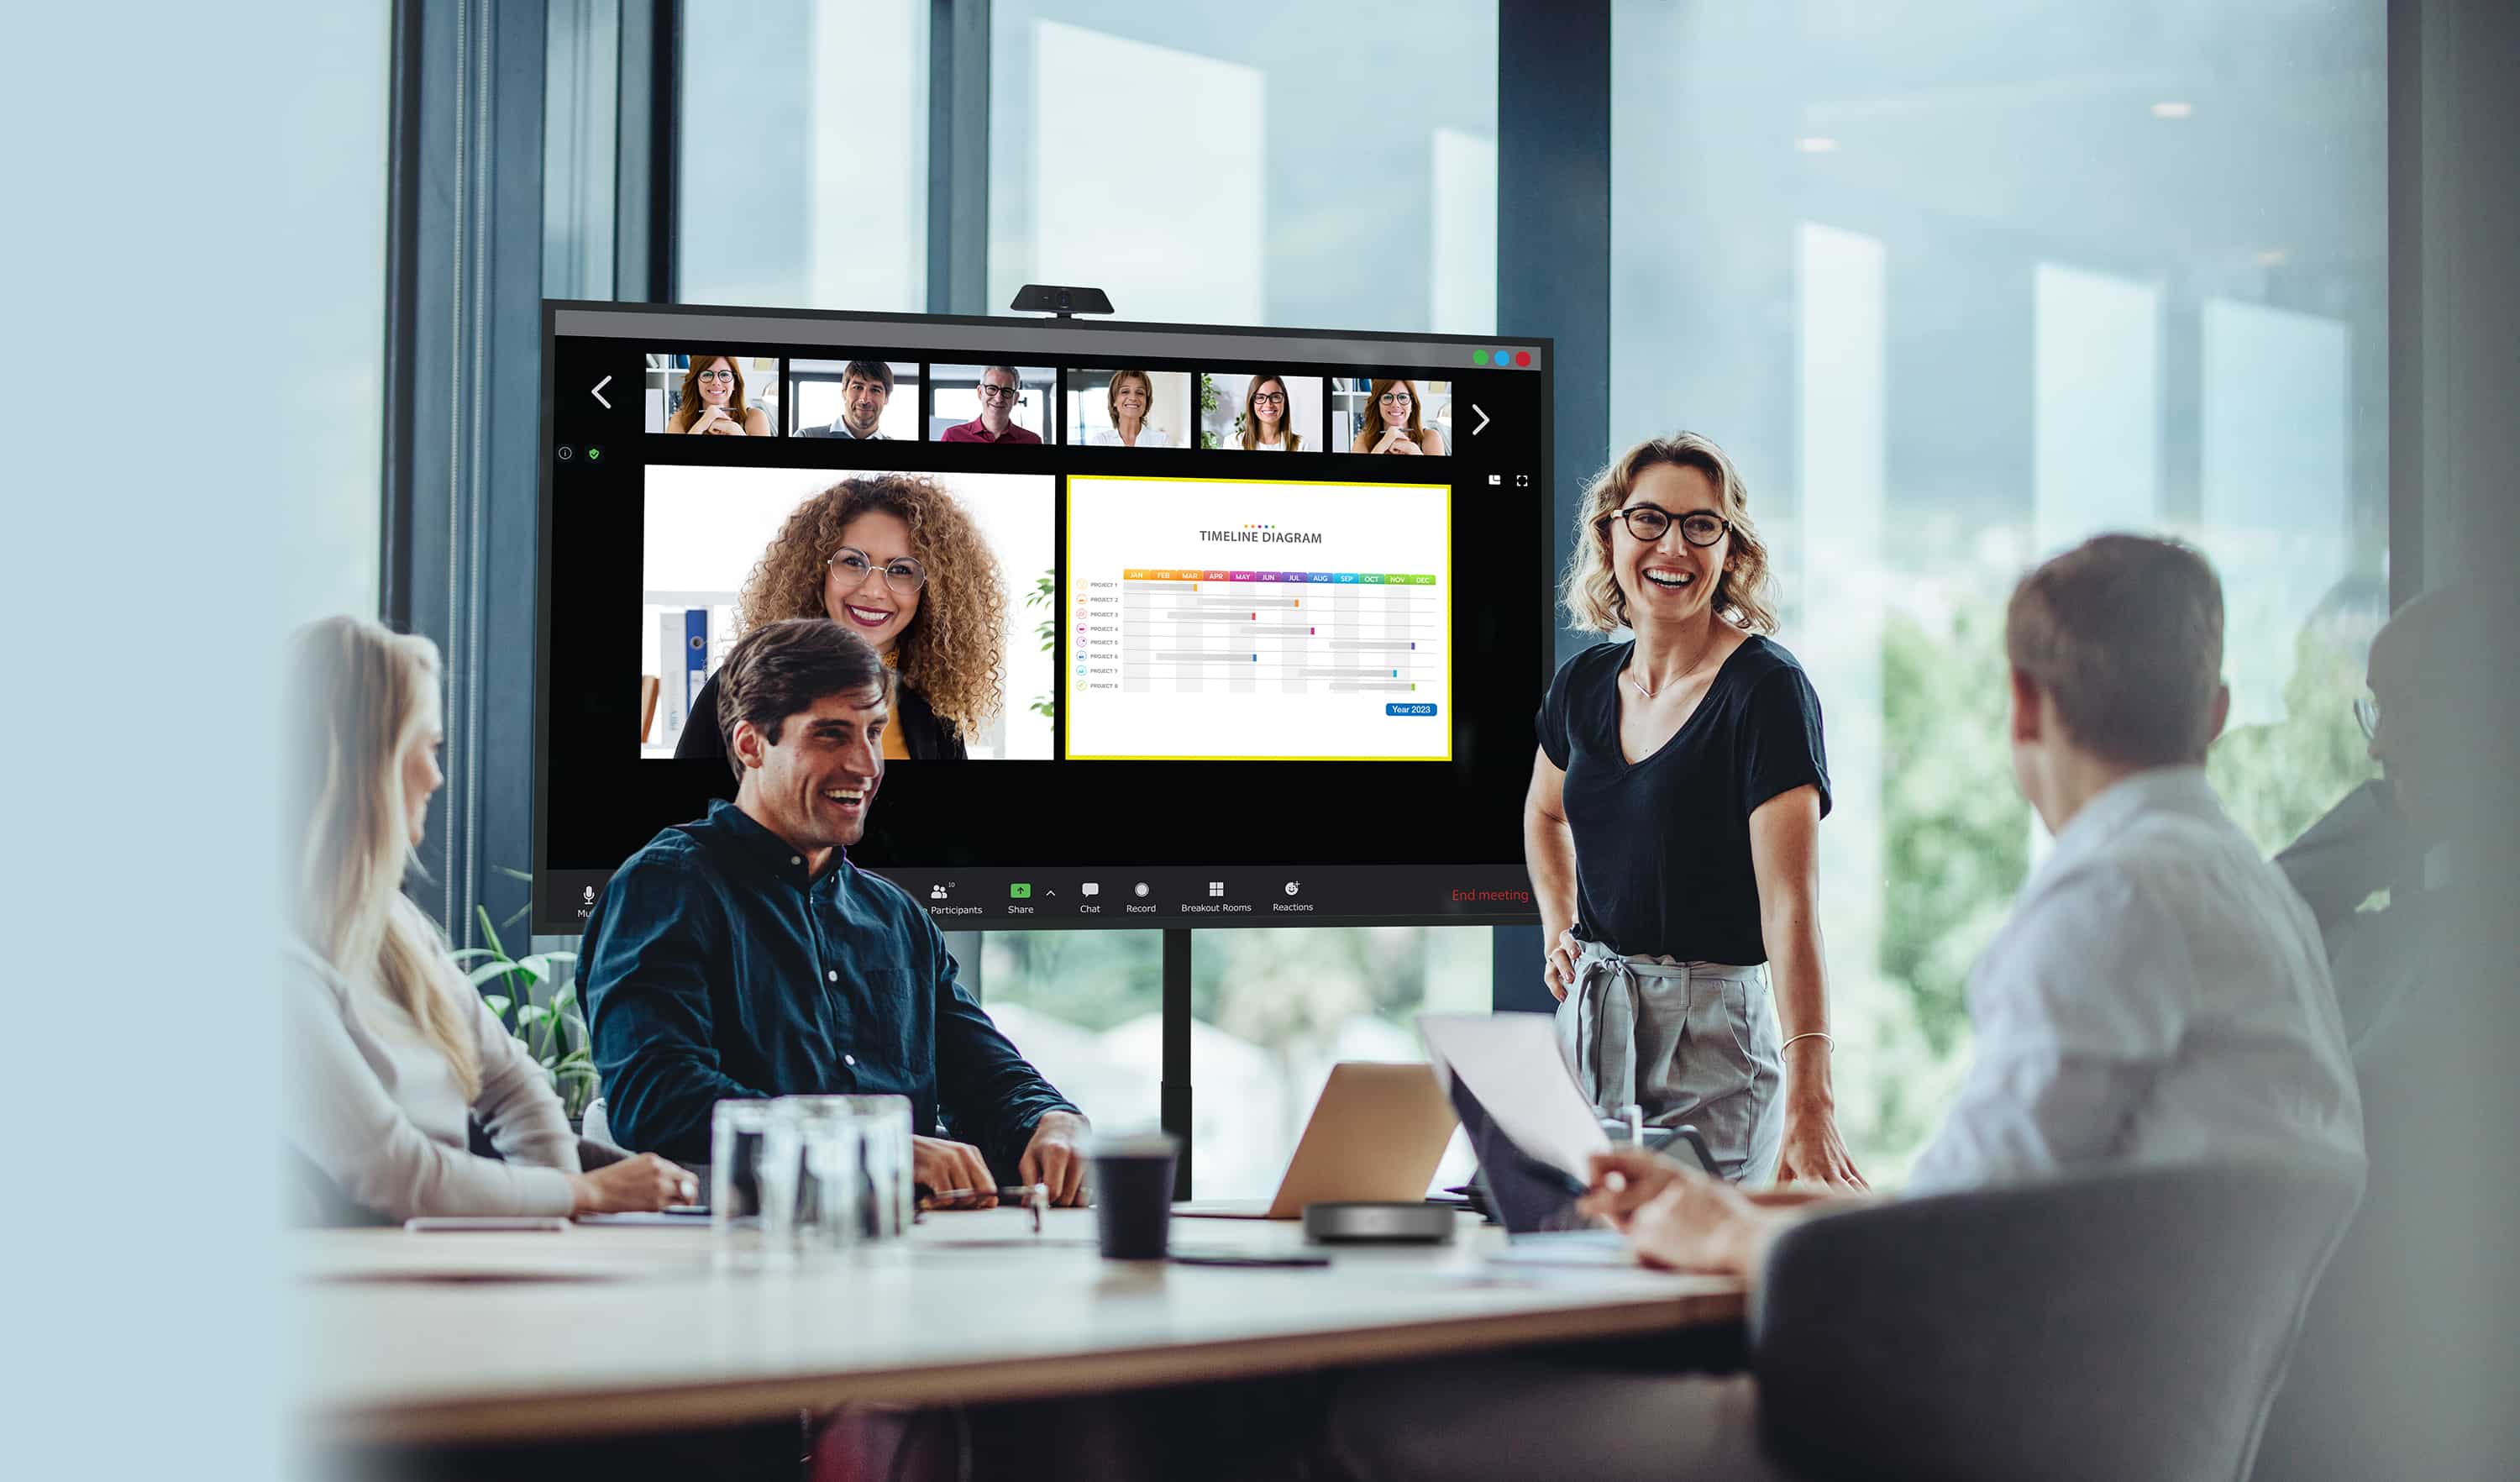 Geschäftsleute, die eine Besprechung durchführen, bei der einige Mitarbeiter physisch anwesend sind, sie schauen auf ein Display der Optoma N-Serie, während ihre externen Kollegen auf dem Bildschirm neben den Inhalten, die sie teilen, angezeigt werden.